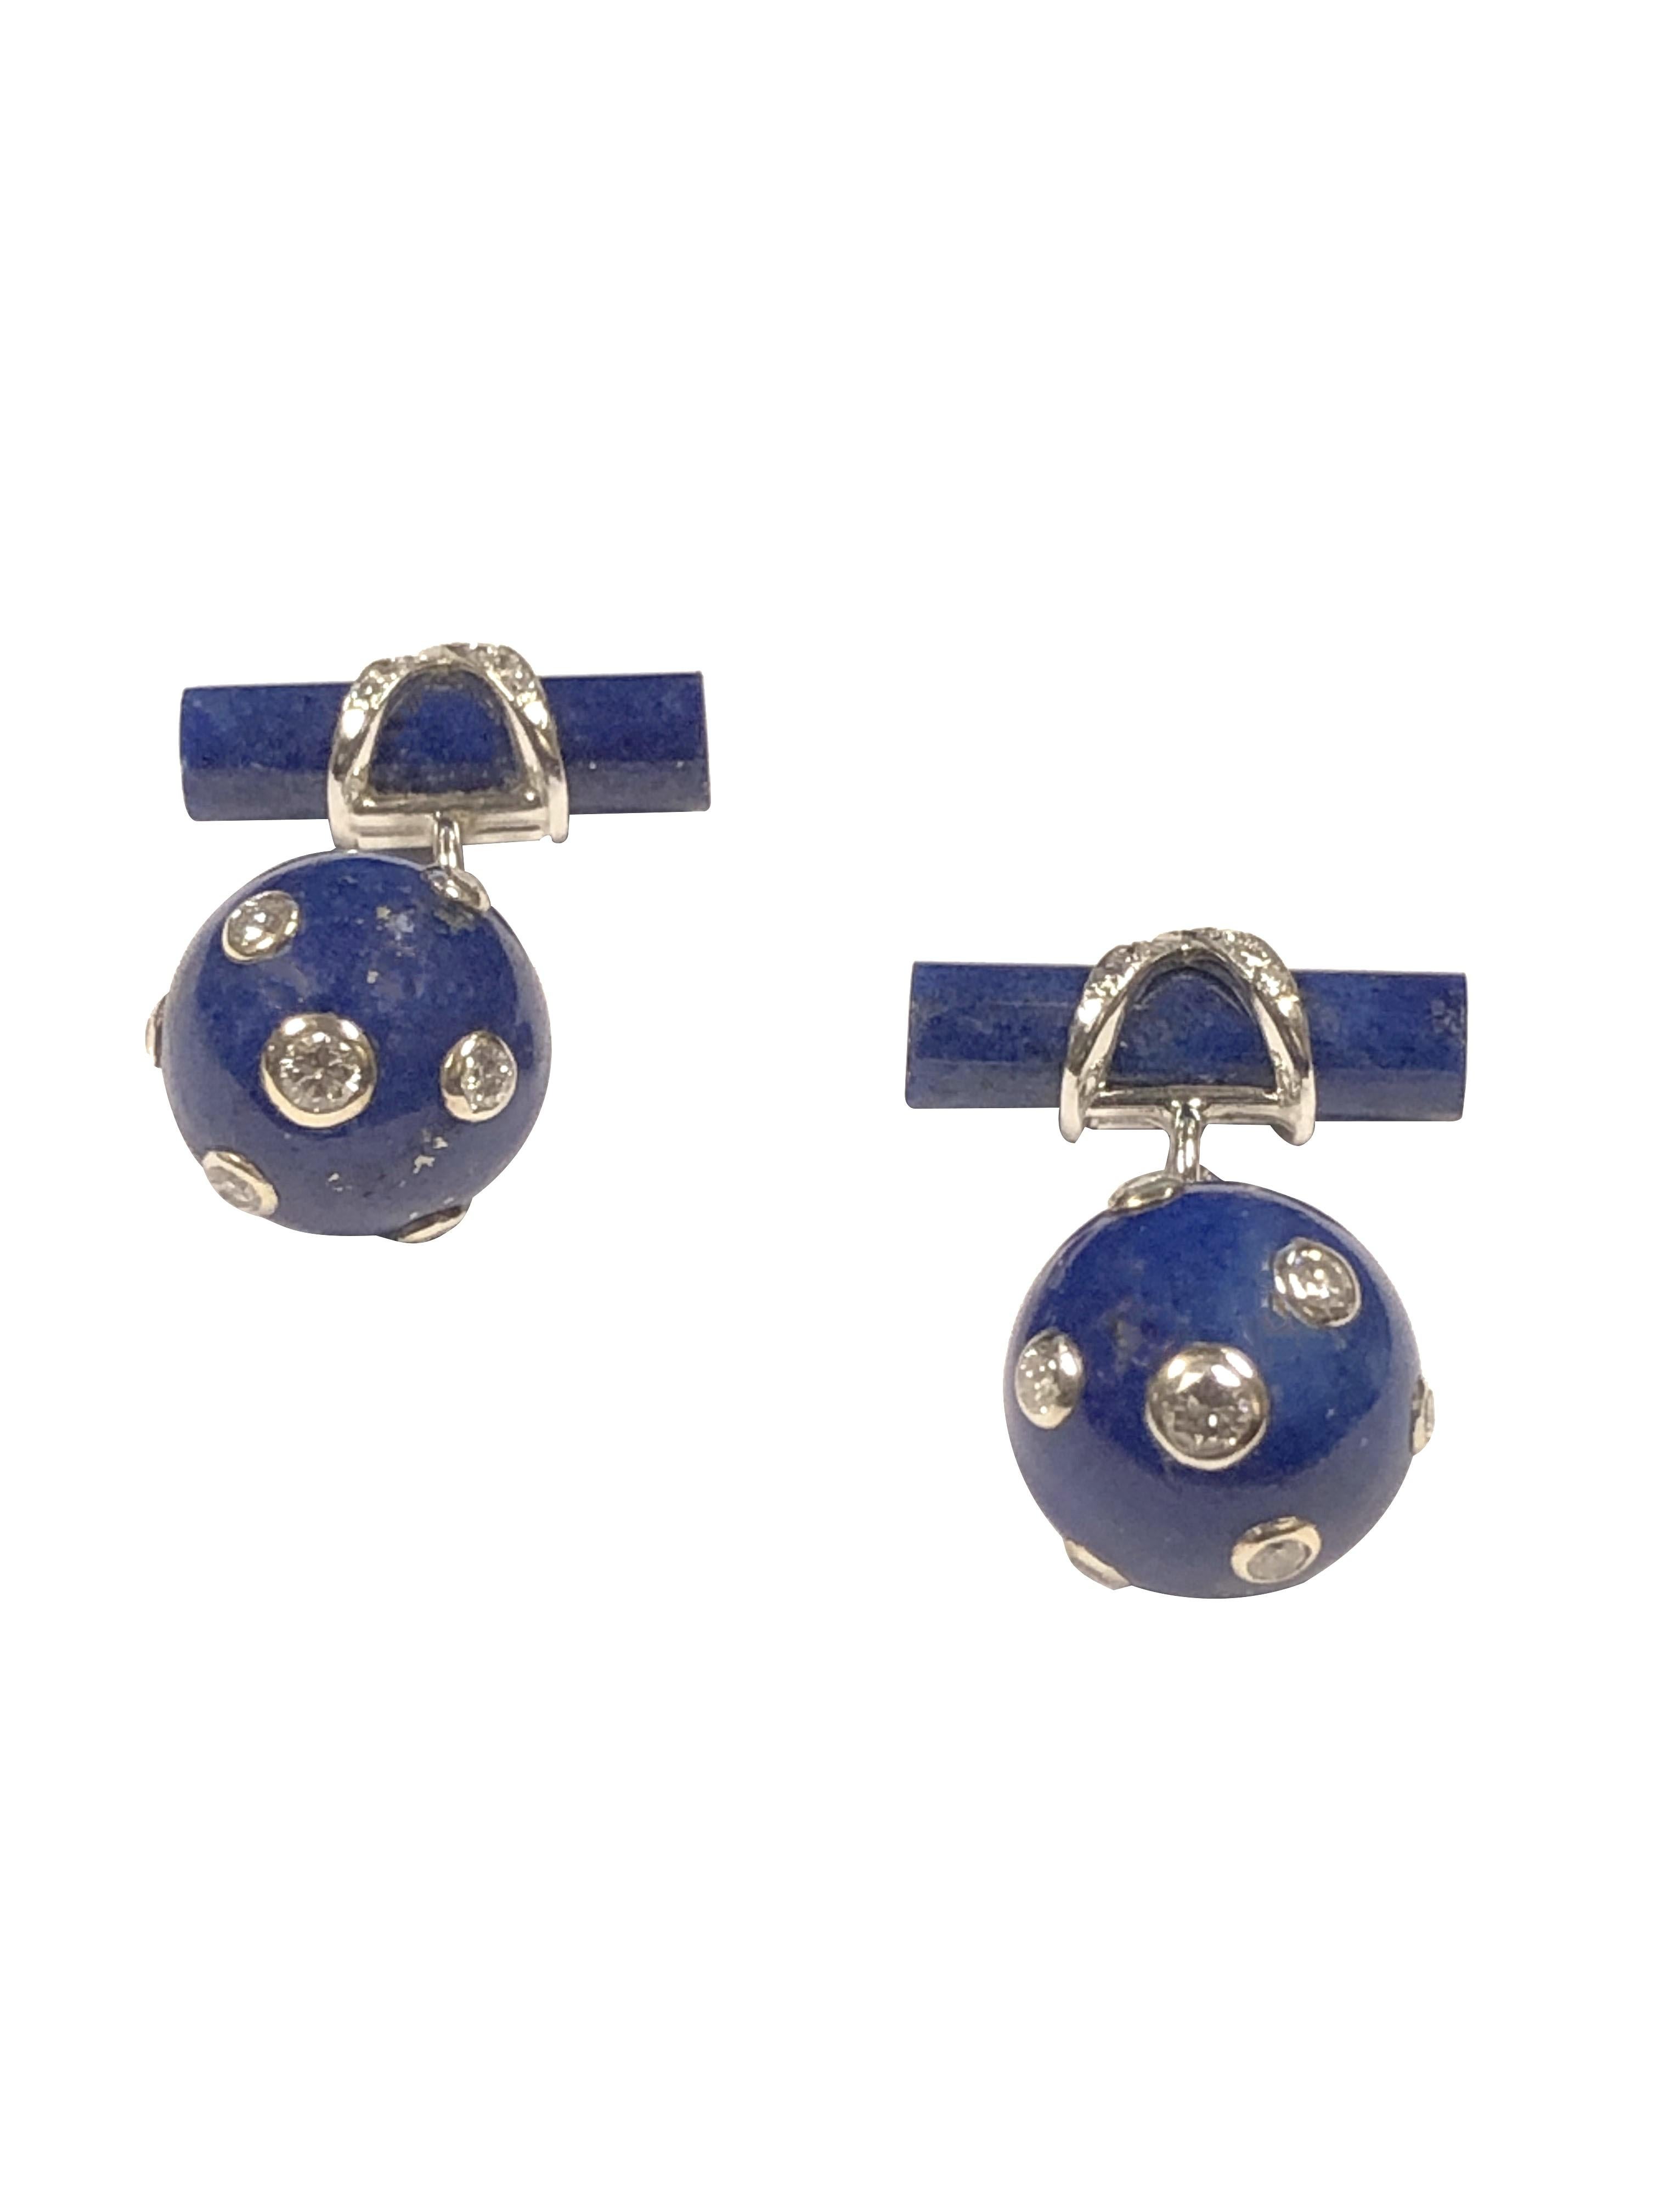 Circa 2000 Boutons de manchette Verdura, composés d'une boule de Lapis Lazuli mesurant 1/2 pouce de diamètre, 7 diamants ronds de taille brillante sertis sur un chaton en or, une chaîne en or blanc reliant une barre de Lapis décorée d'un X serti de